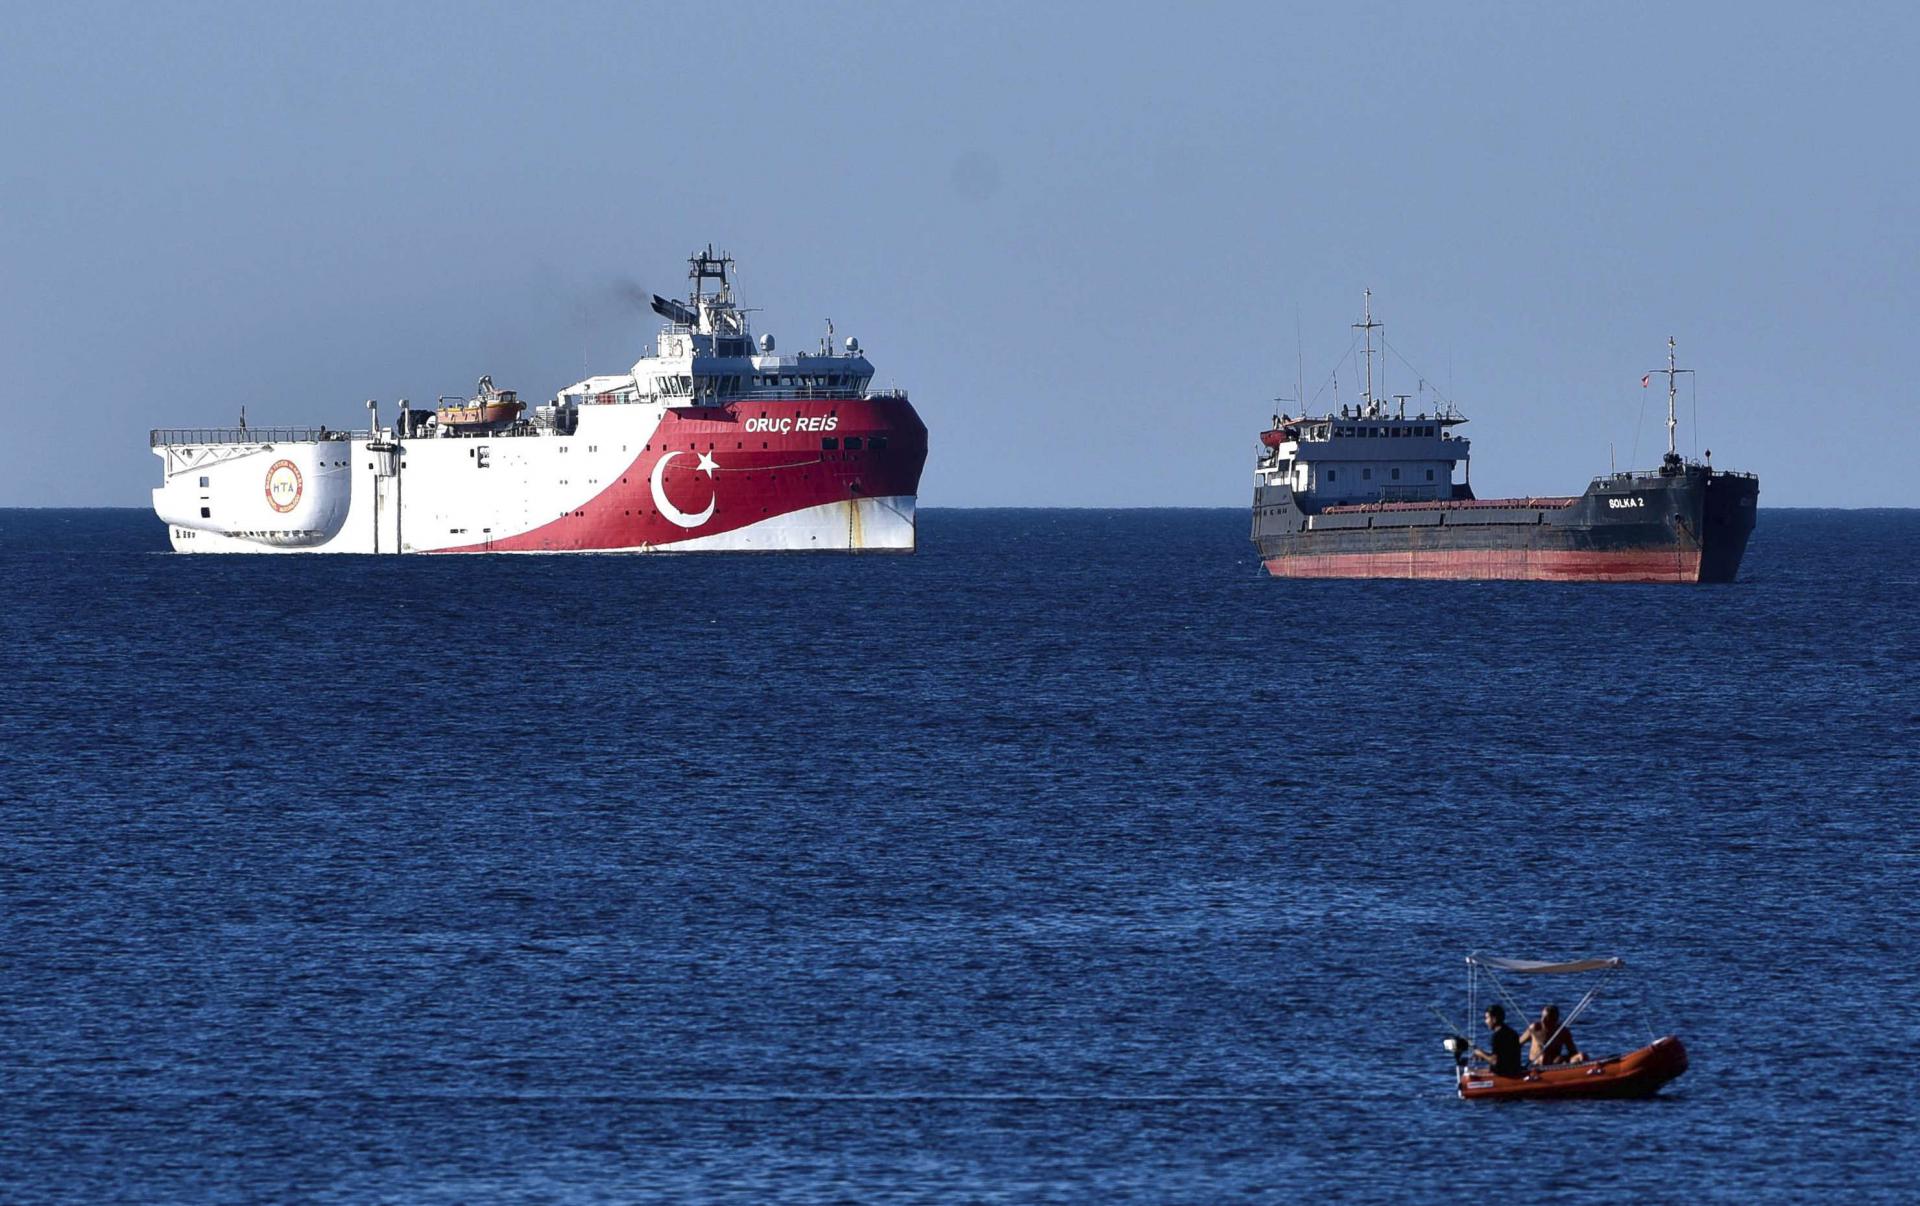 سفينة التقيب التركية 'أوروتش رايس' تبحر في مياه شرق المتوسط